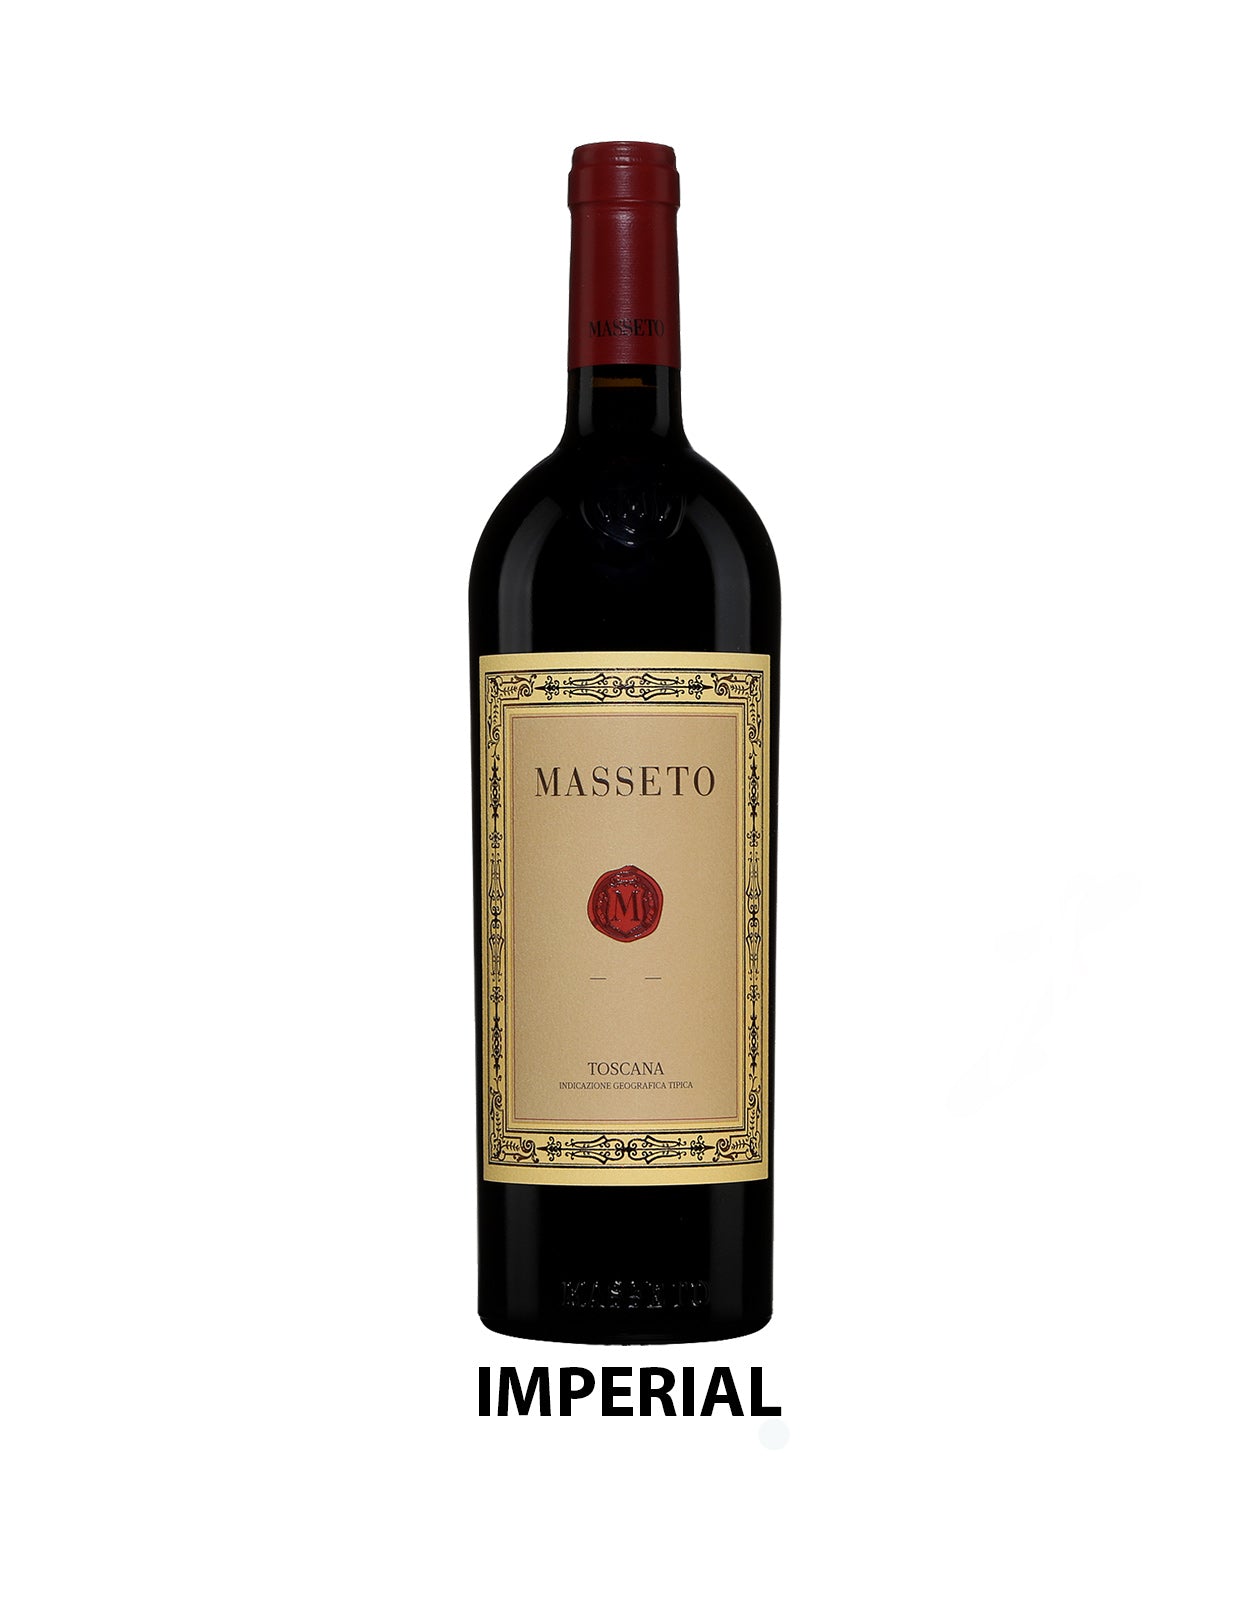 Masseto 2019 - 6 Litre Bottle